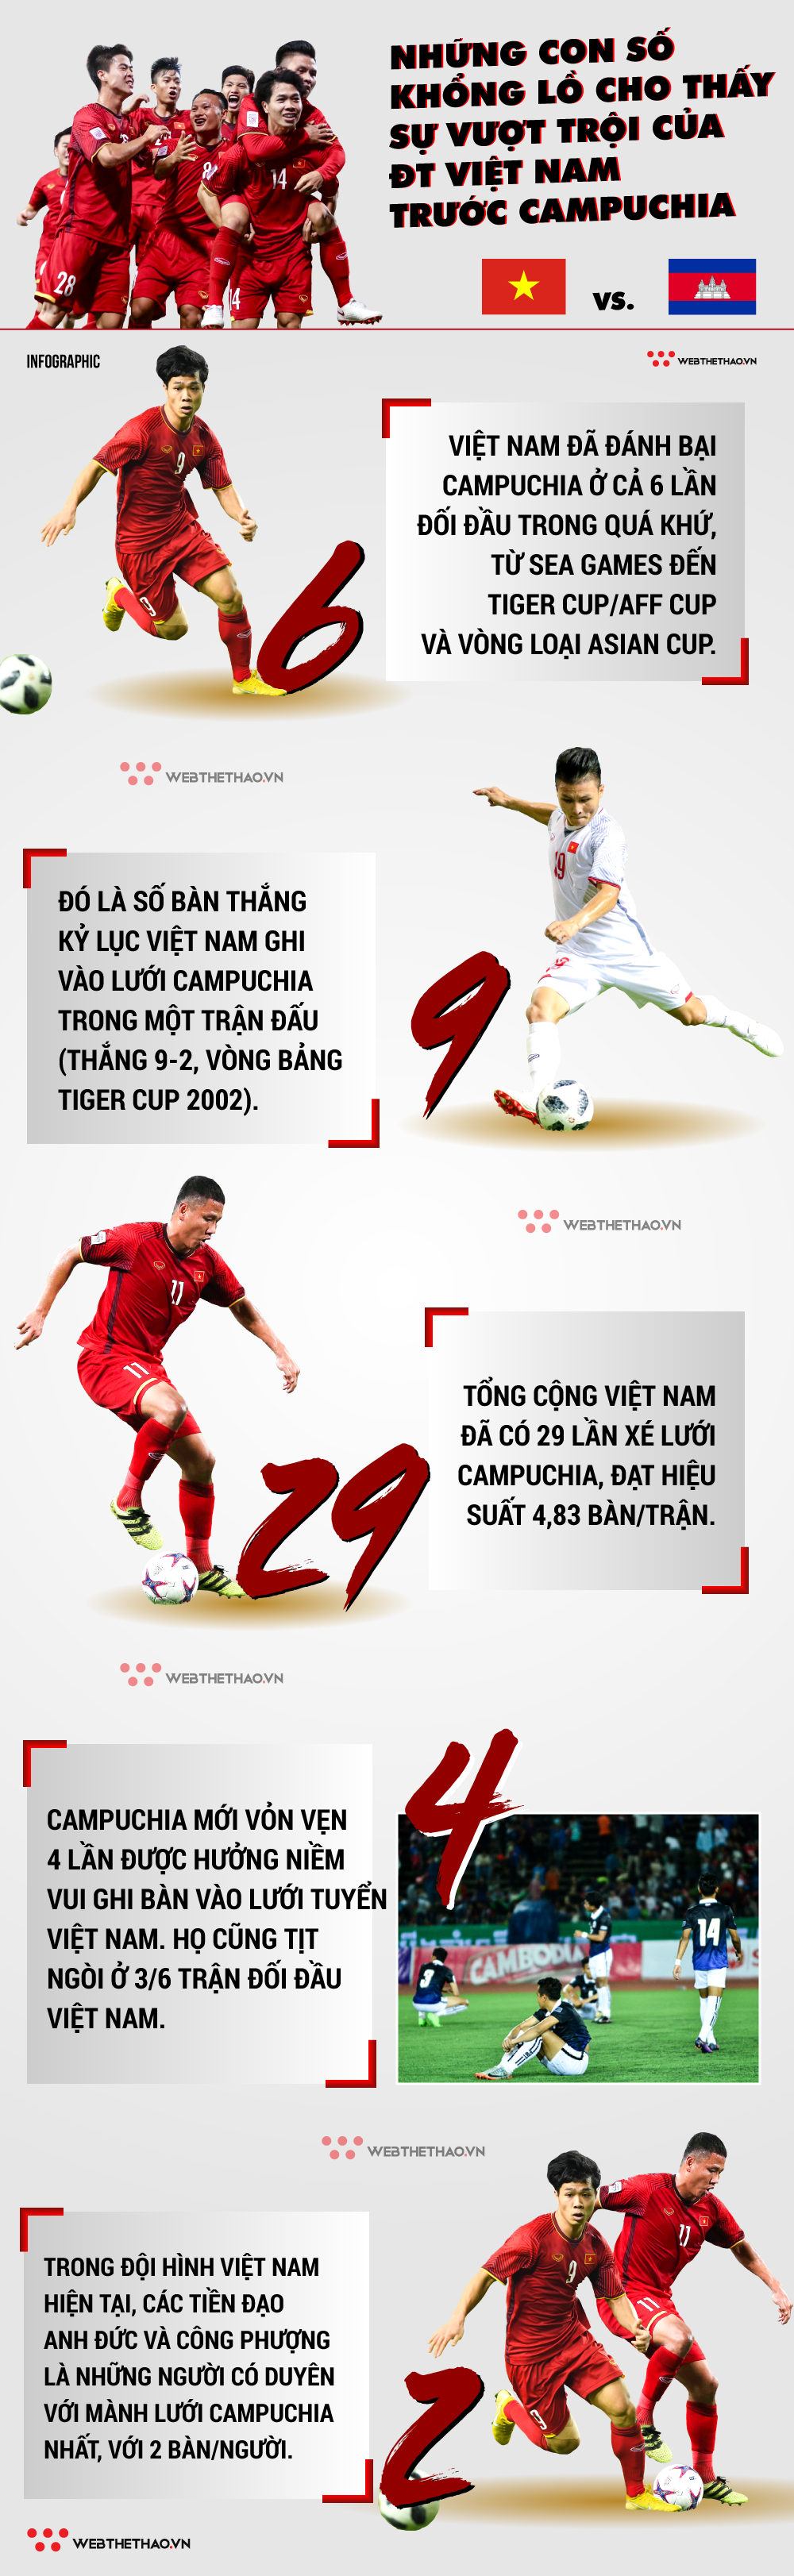 Infographic: Những con số cho thấy ĐT Việt Nam át vía Campuchia ghê gớm - Ảnh 1.